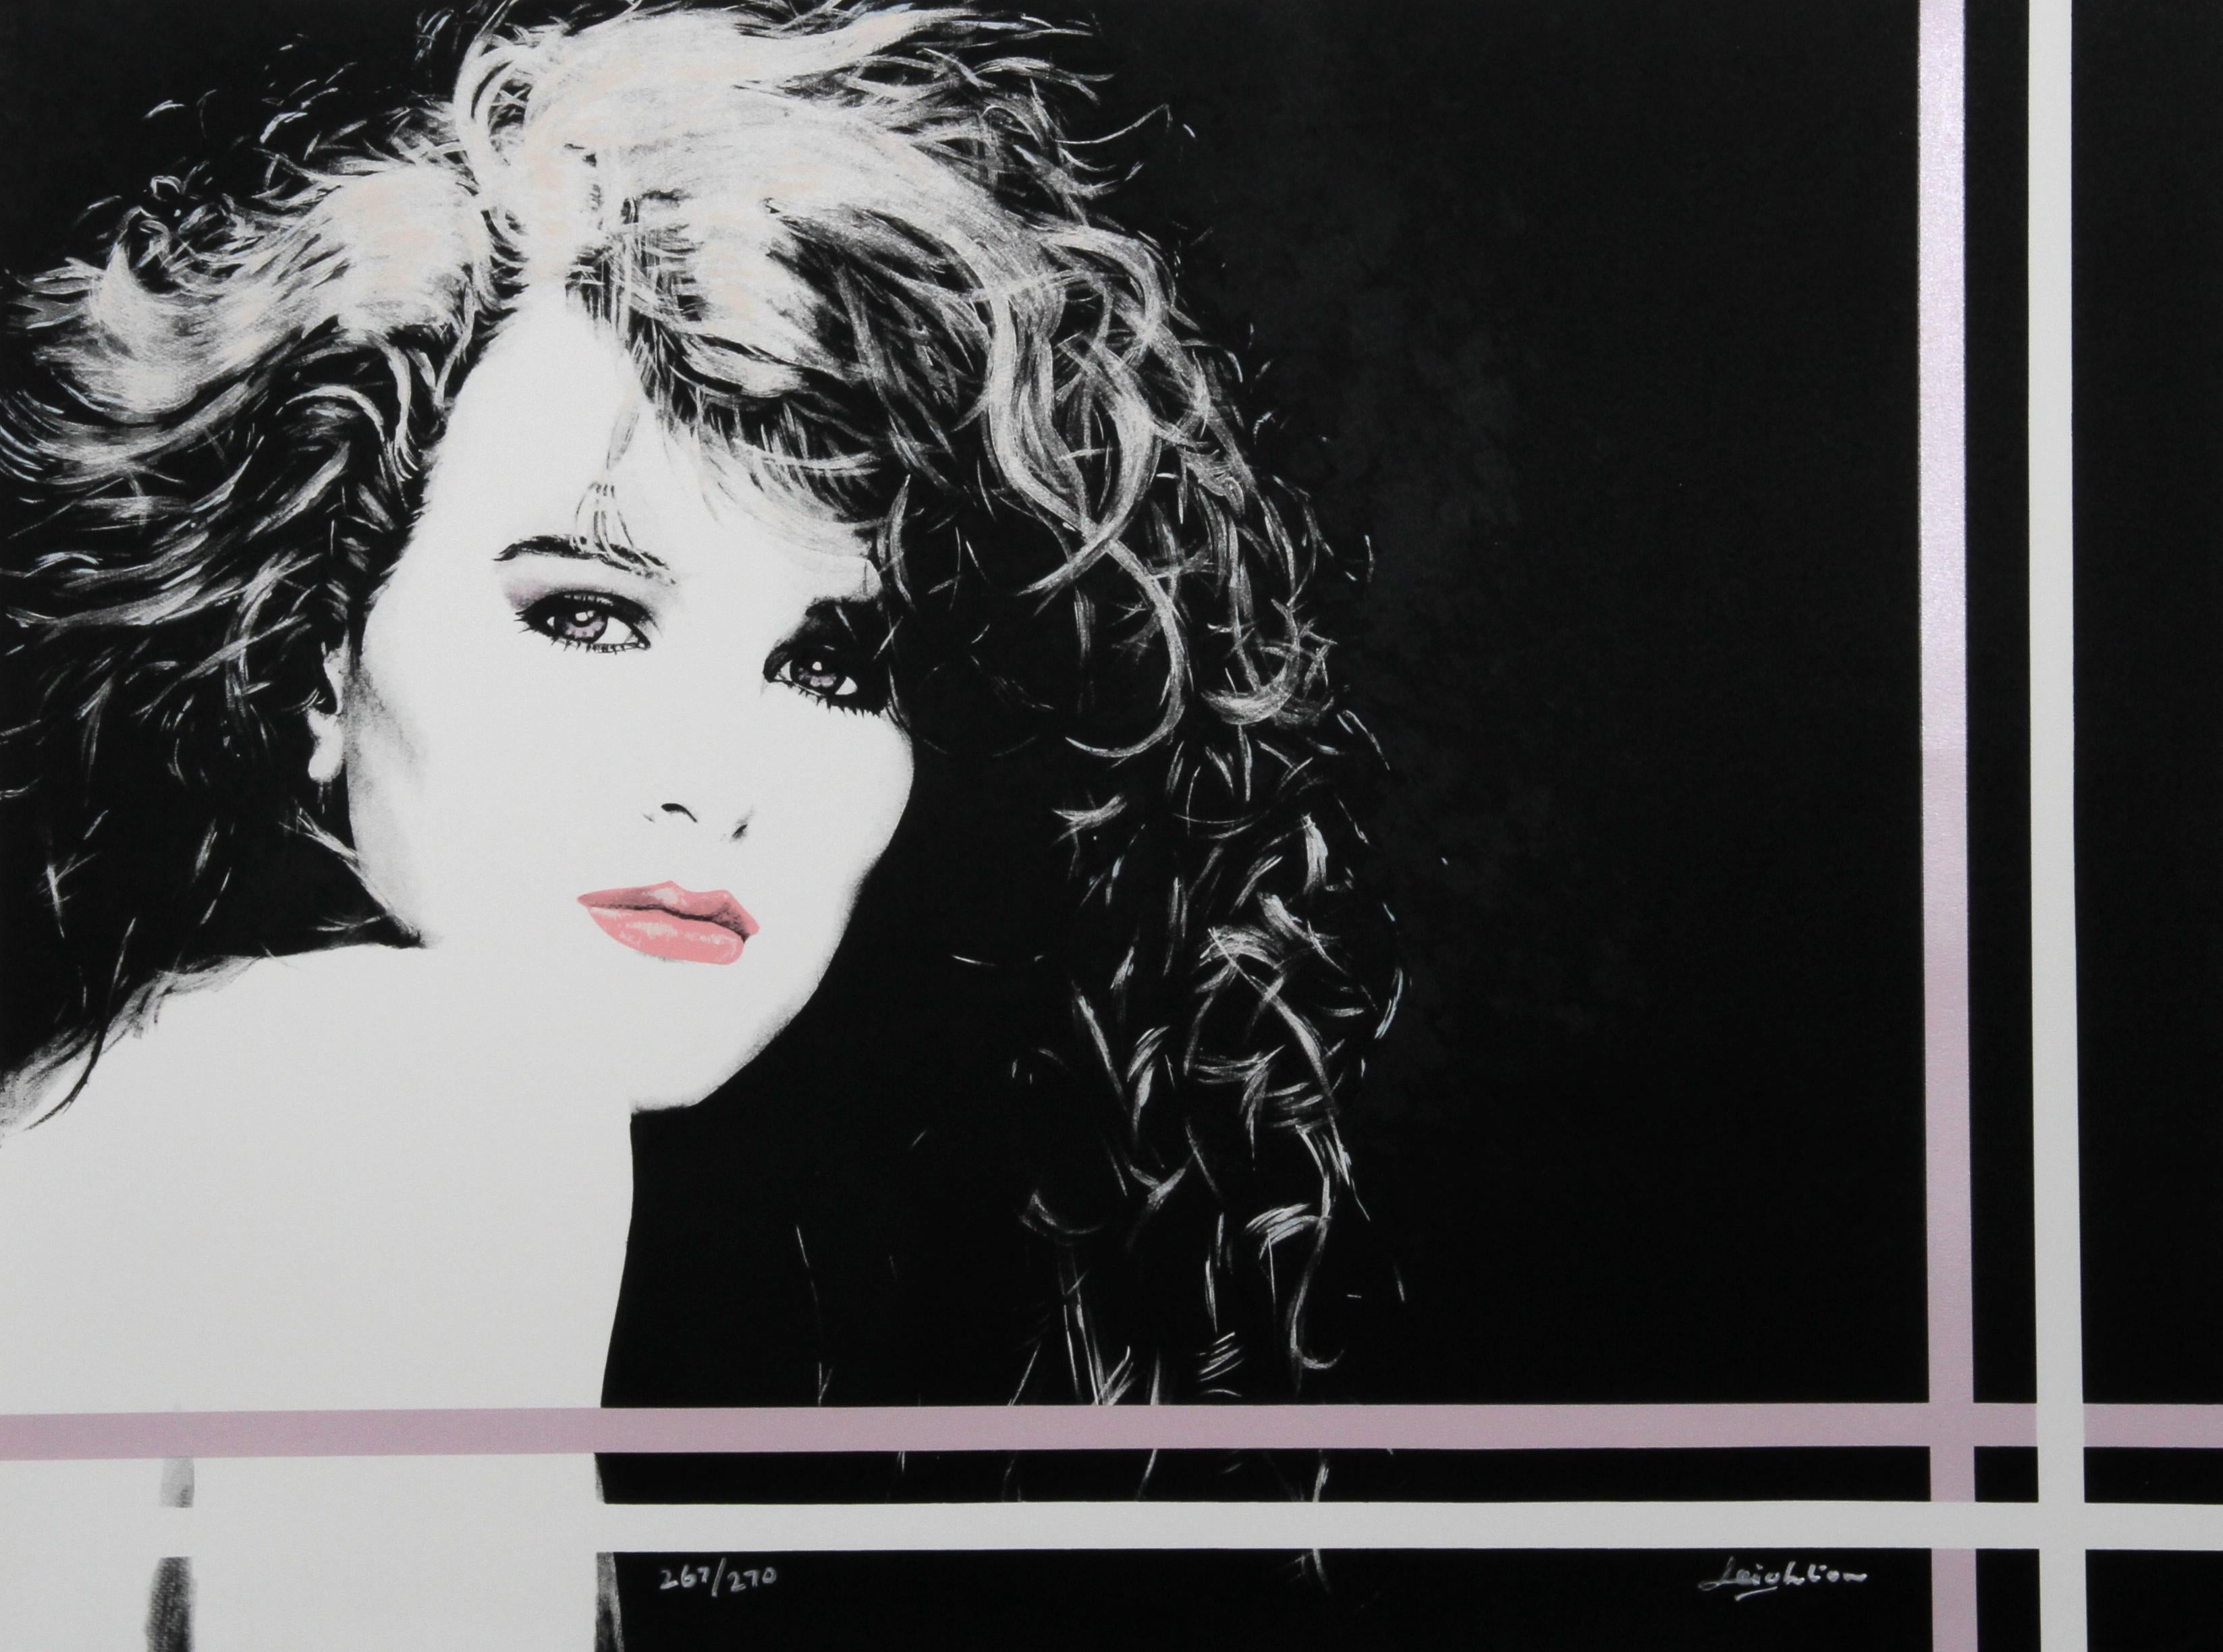 Künstler: Dan Leighton, Amerikaner XX.
Titel: Sheri
Jahr: ca. 1987
Medium: Lithographie, mit Bleistift signiert und nummeriert
Auflage: 267/270
Größe: 30 x 40 Zoll (76,2 x 101,6 cm)